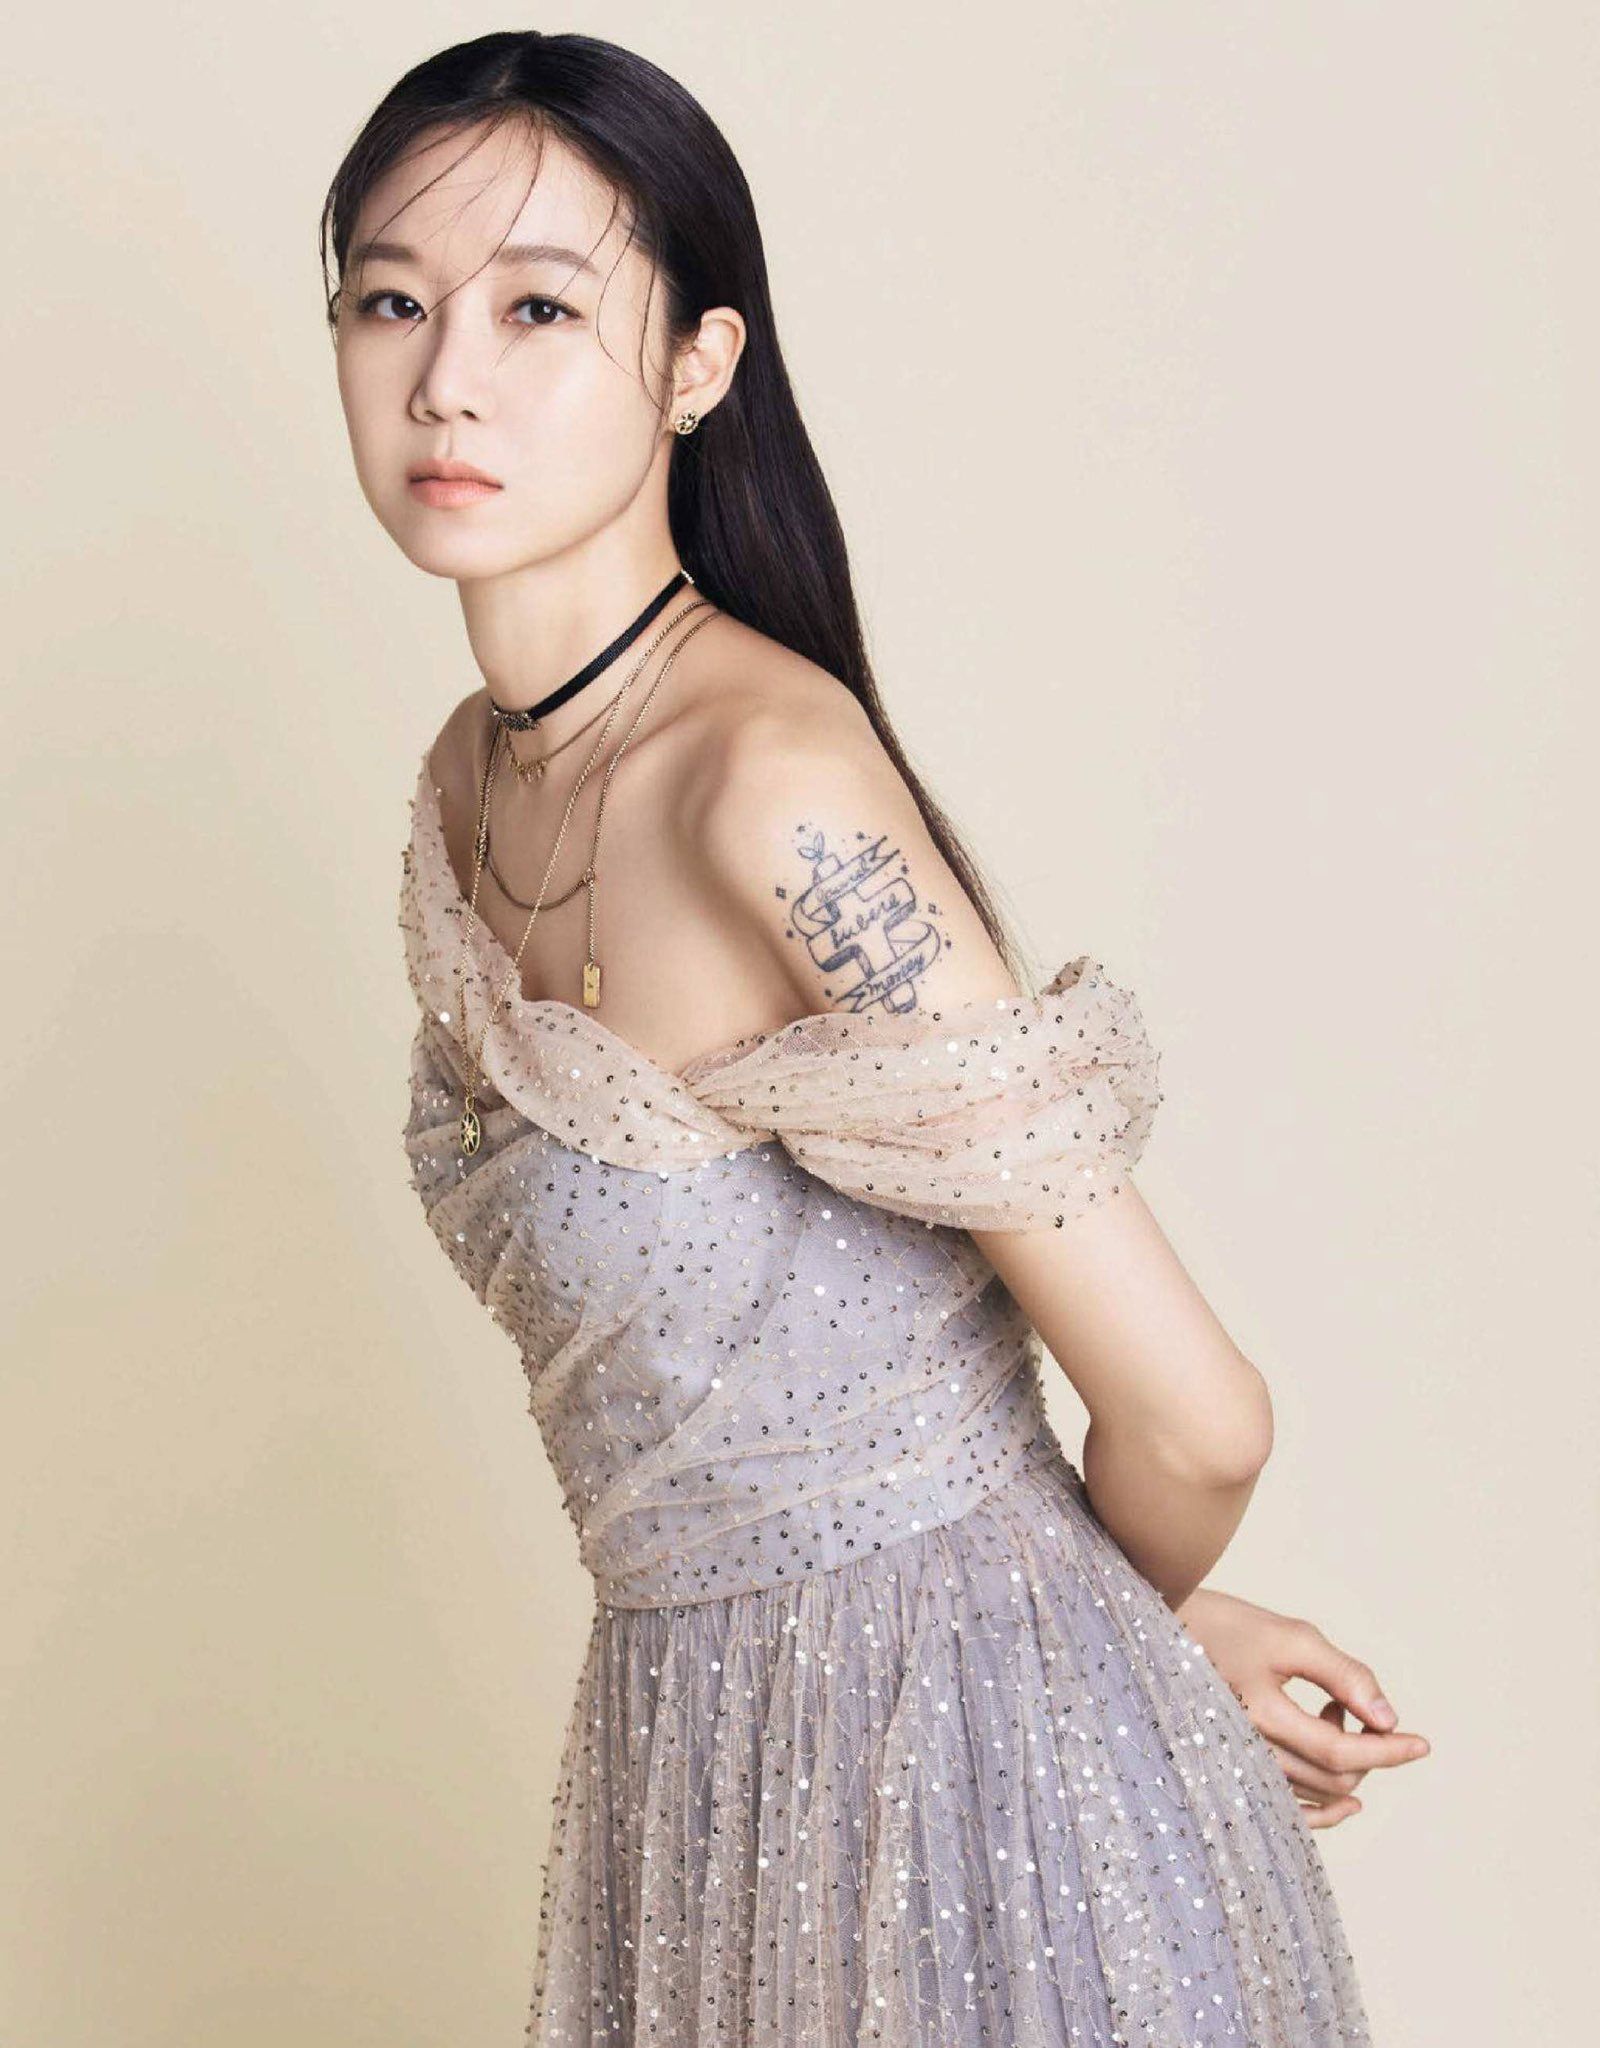 Top 10 mỹ nhân Hàn đẹp nhất tháng 9: Son Ye Jin và “cô dâu tháng 10” Gong Hyo Jin ở đầu bảng - Ảnh 3.